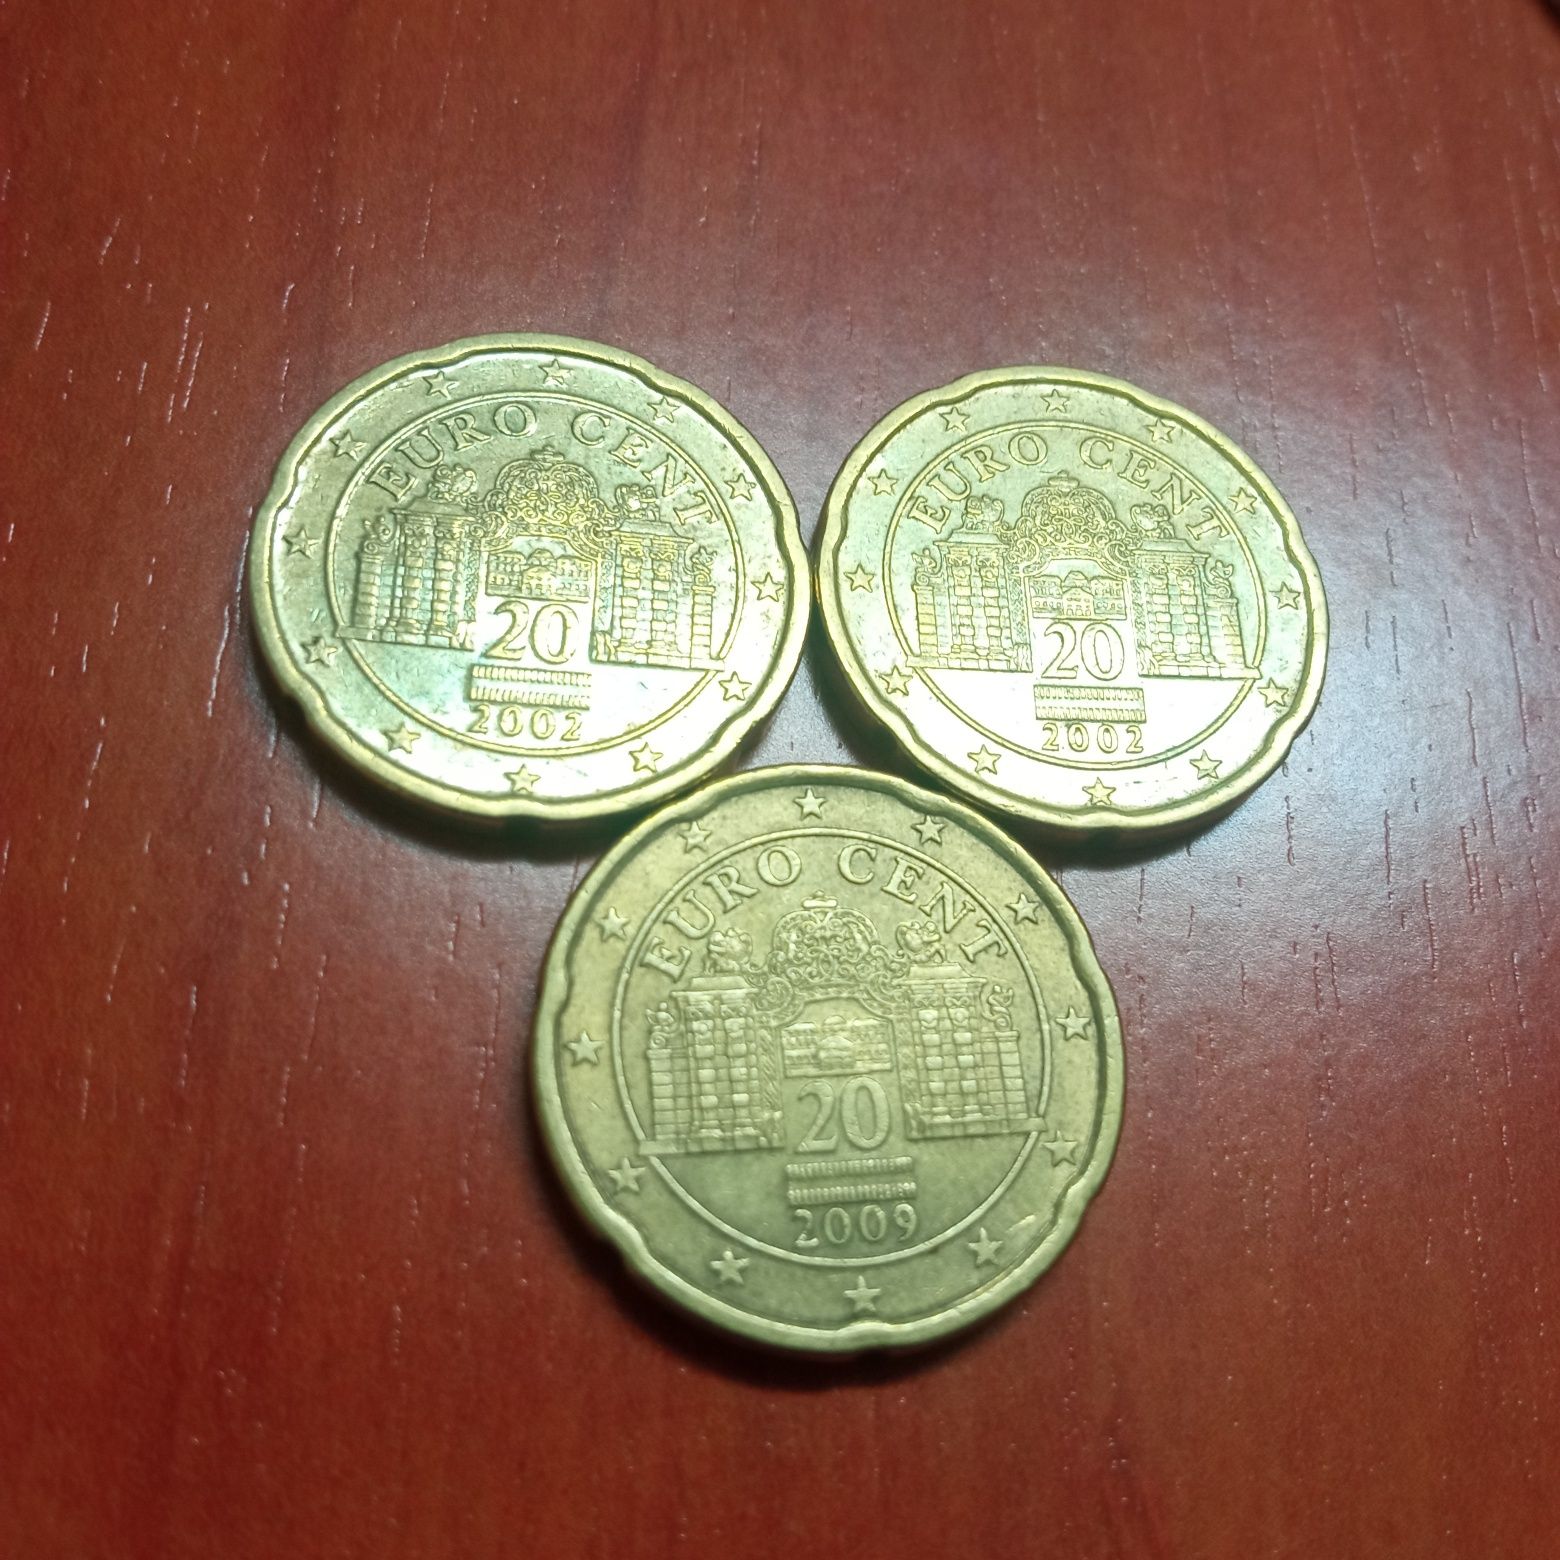 20 cêntimos rara 2009,2002